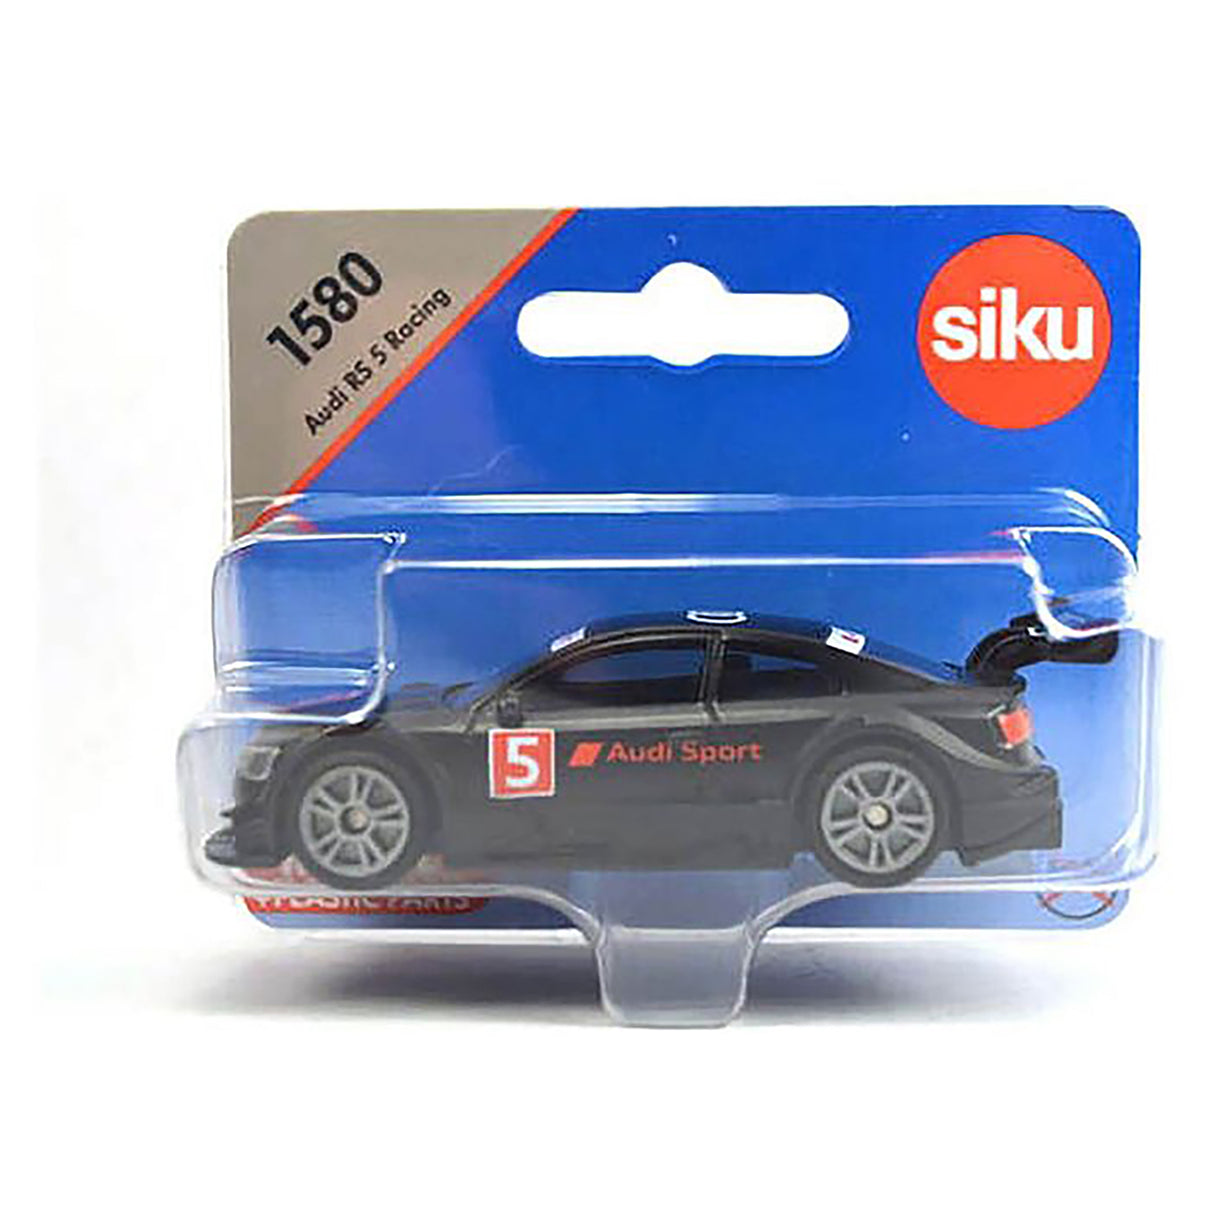 Siku 1580 Die-Cast Vehicle - Audi RS 5 Racing